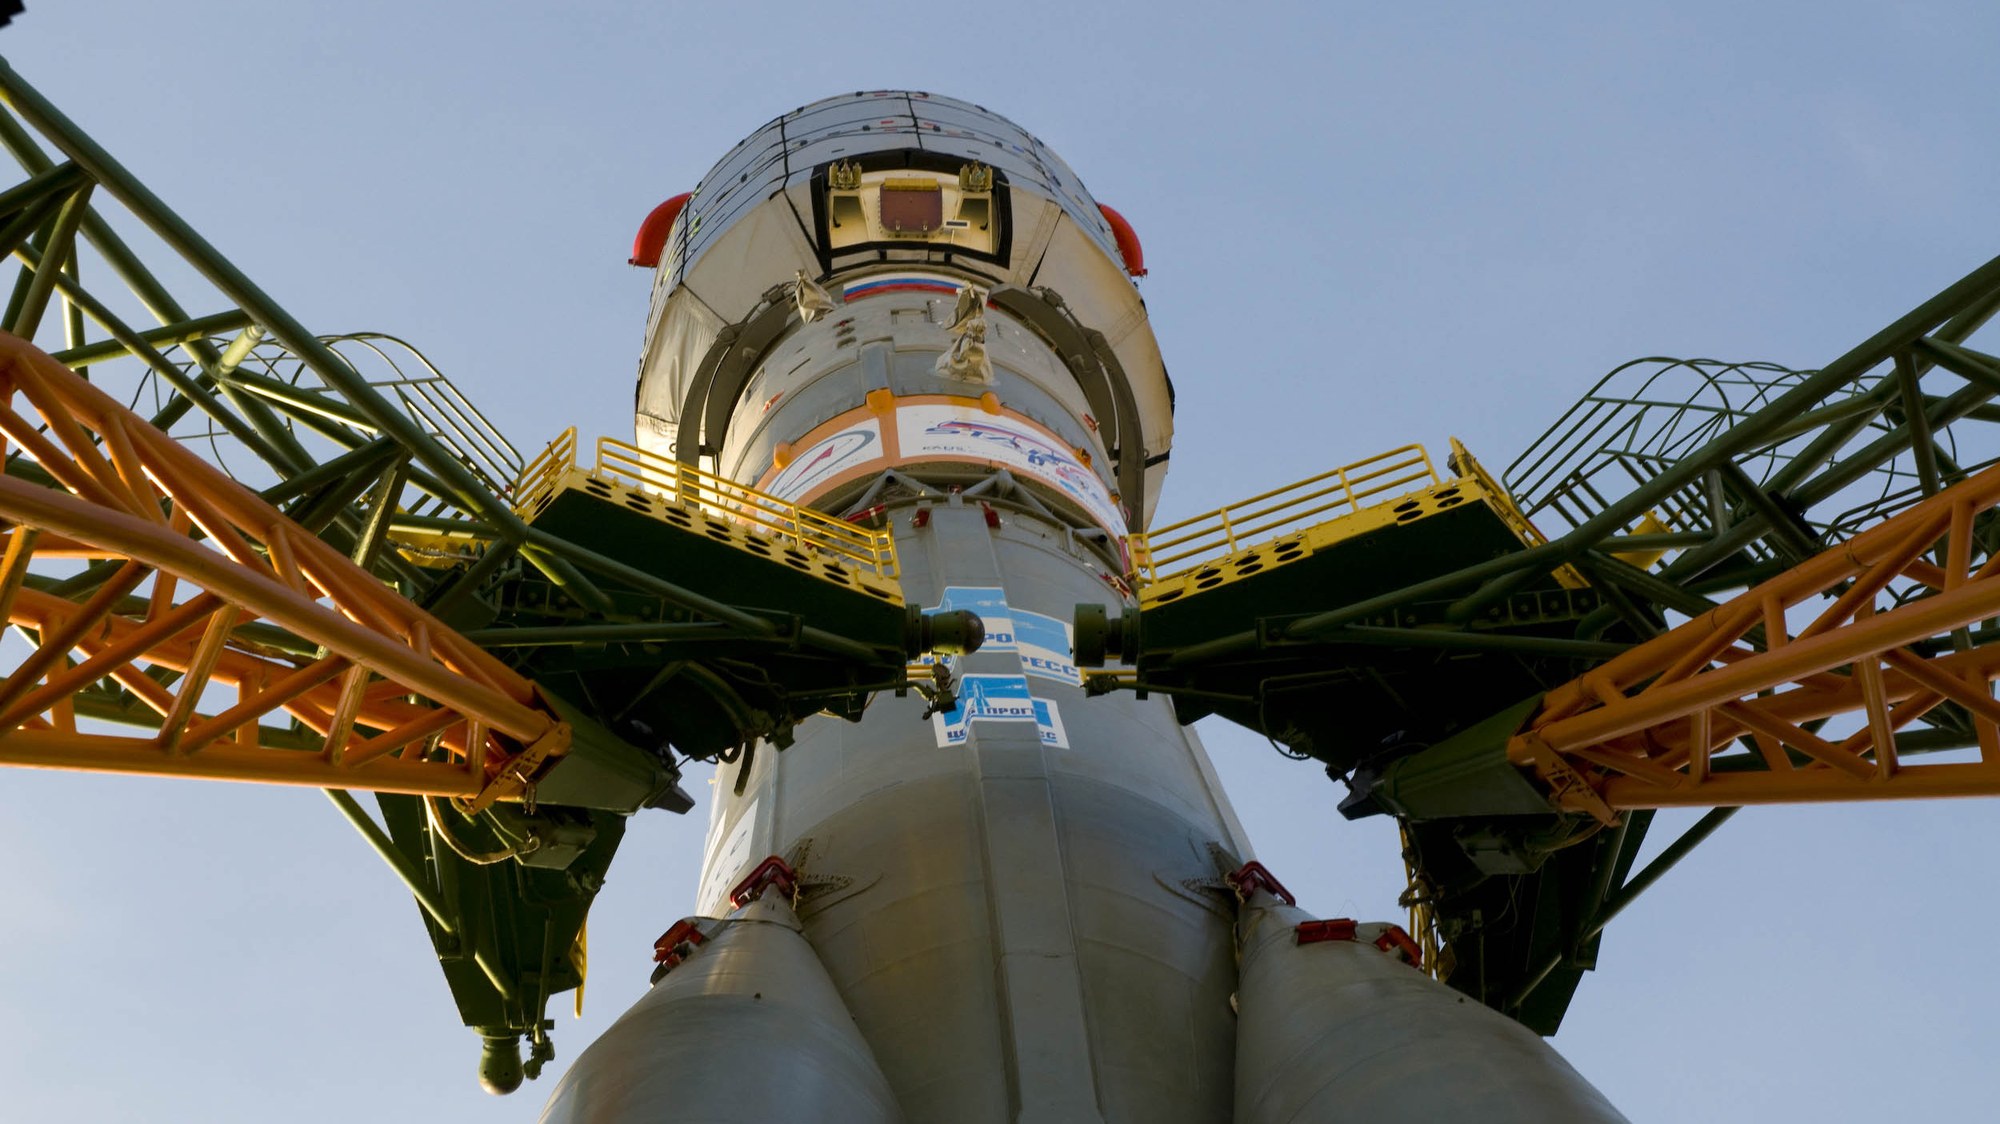 Soyuz Fregat launch vehicle with Galileo